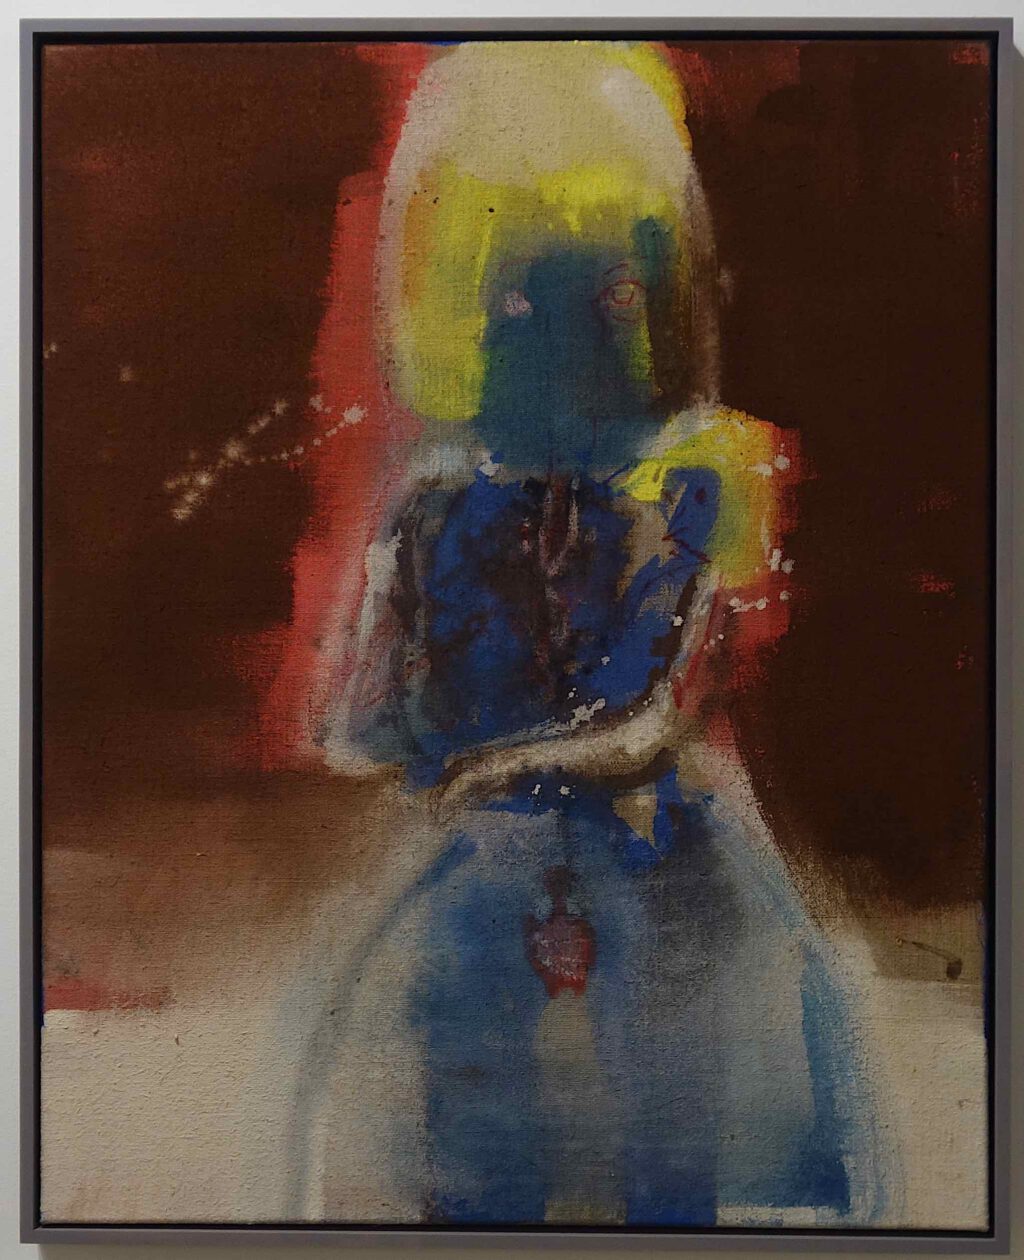 イケムラレイコ IKEMURA Leiko Difficult Baby 2021, Tempera and oil on jute, 100 x 80 cm (IKEMU26534) @ Galerie Peter Kilchmann, Art Basel 2023